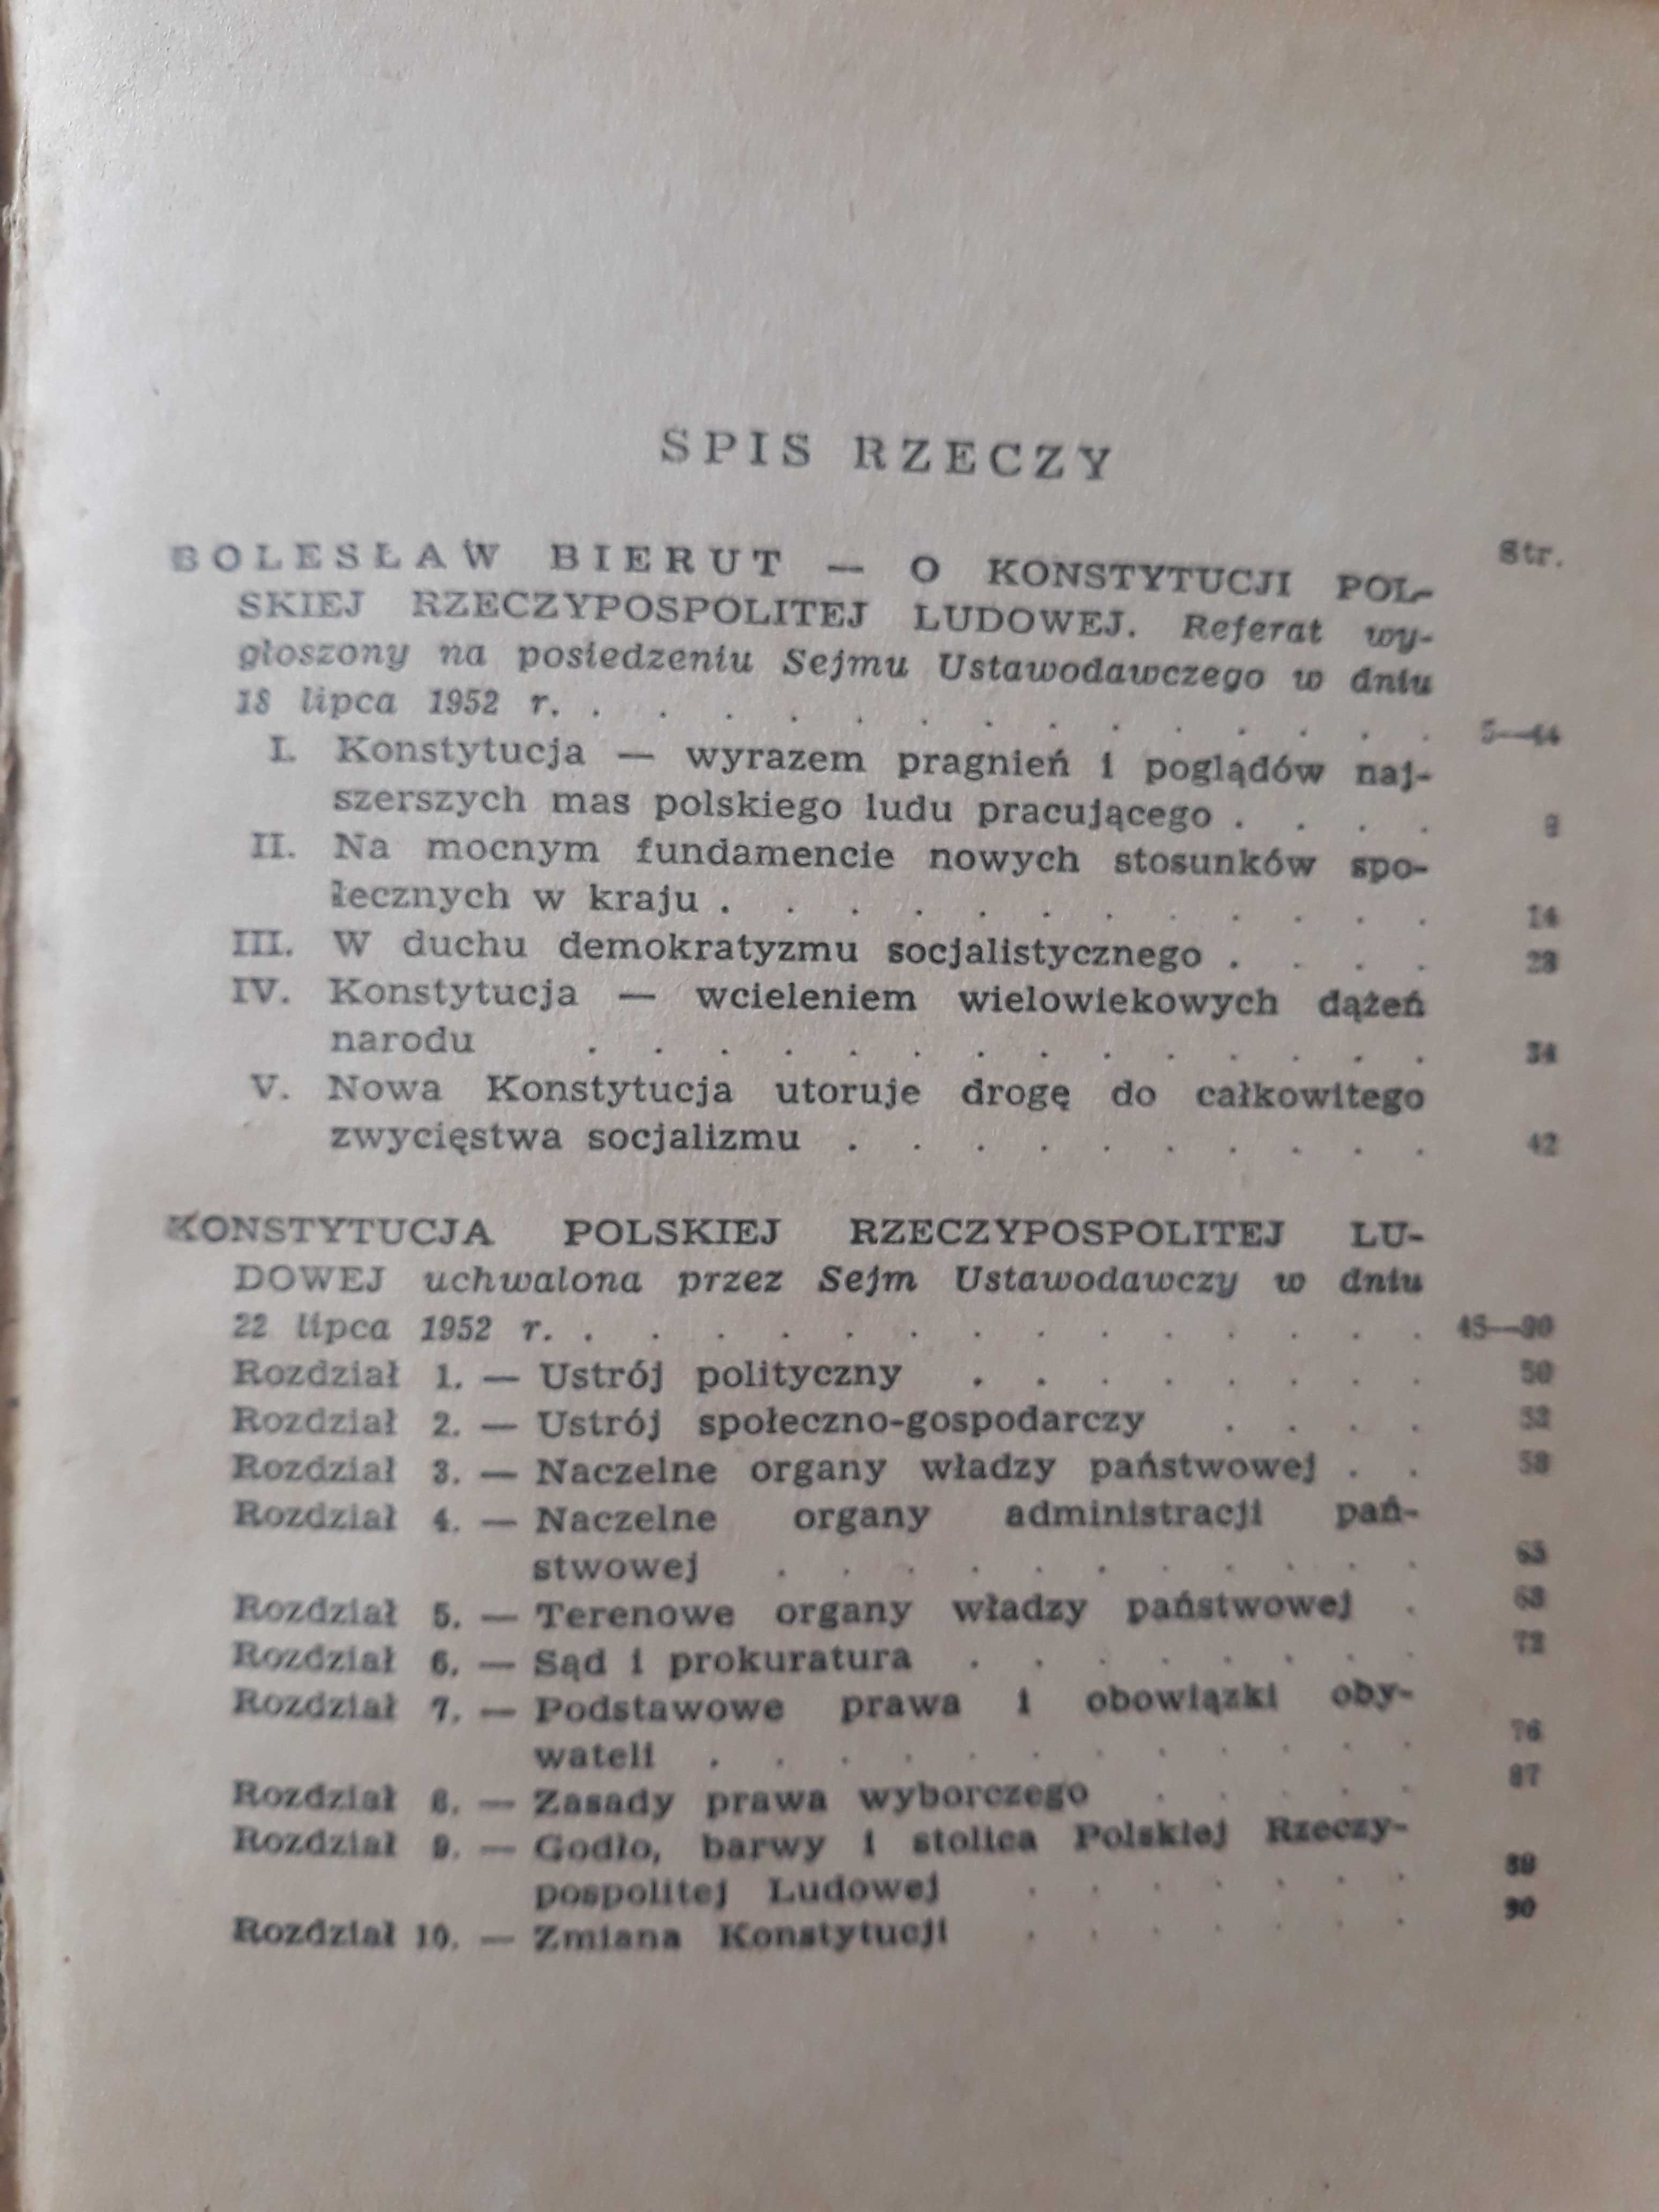 Stara książka Bolesław Bierut O konstytucji PRL